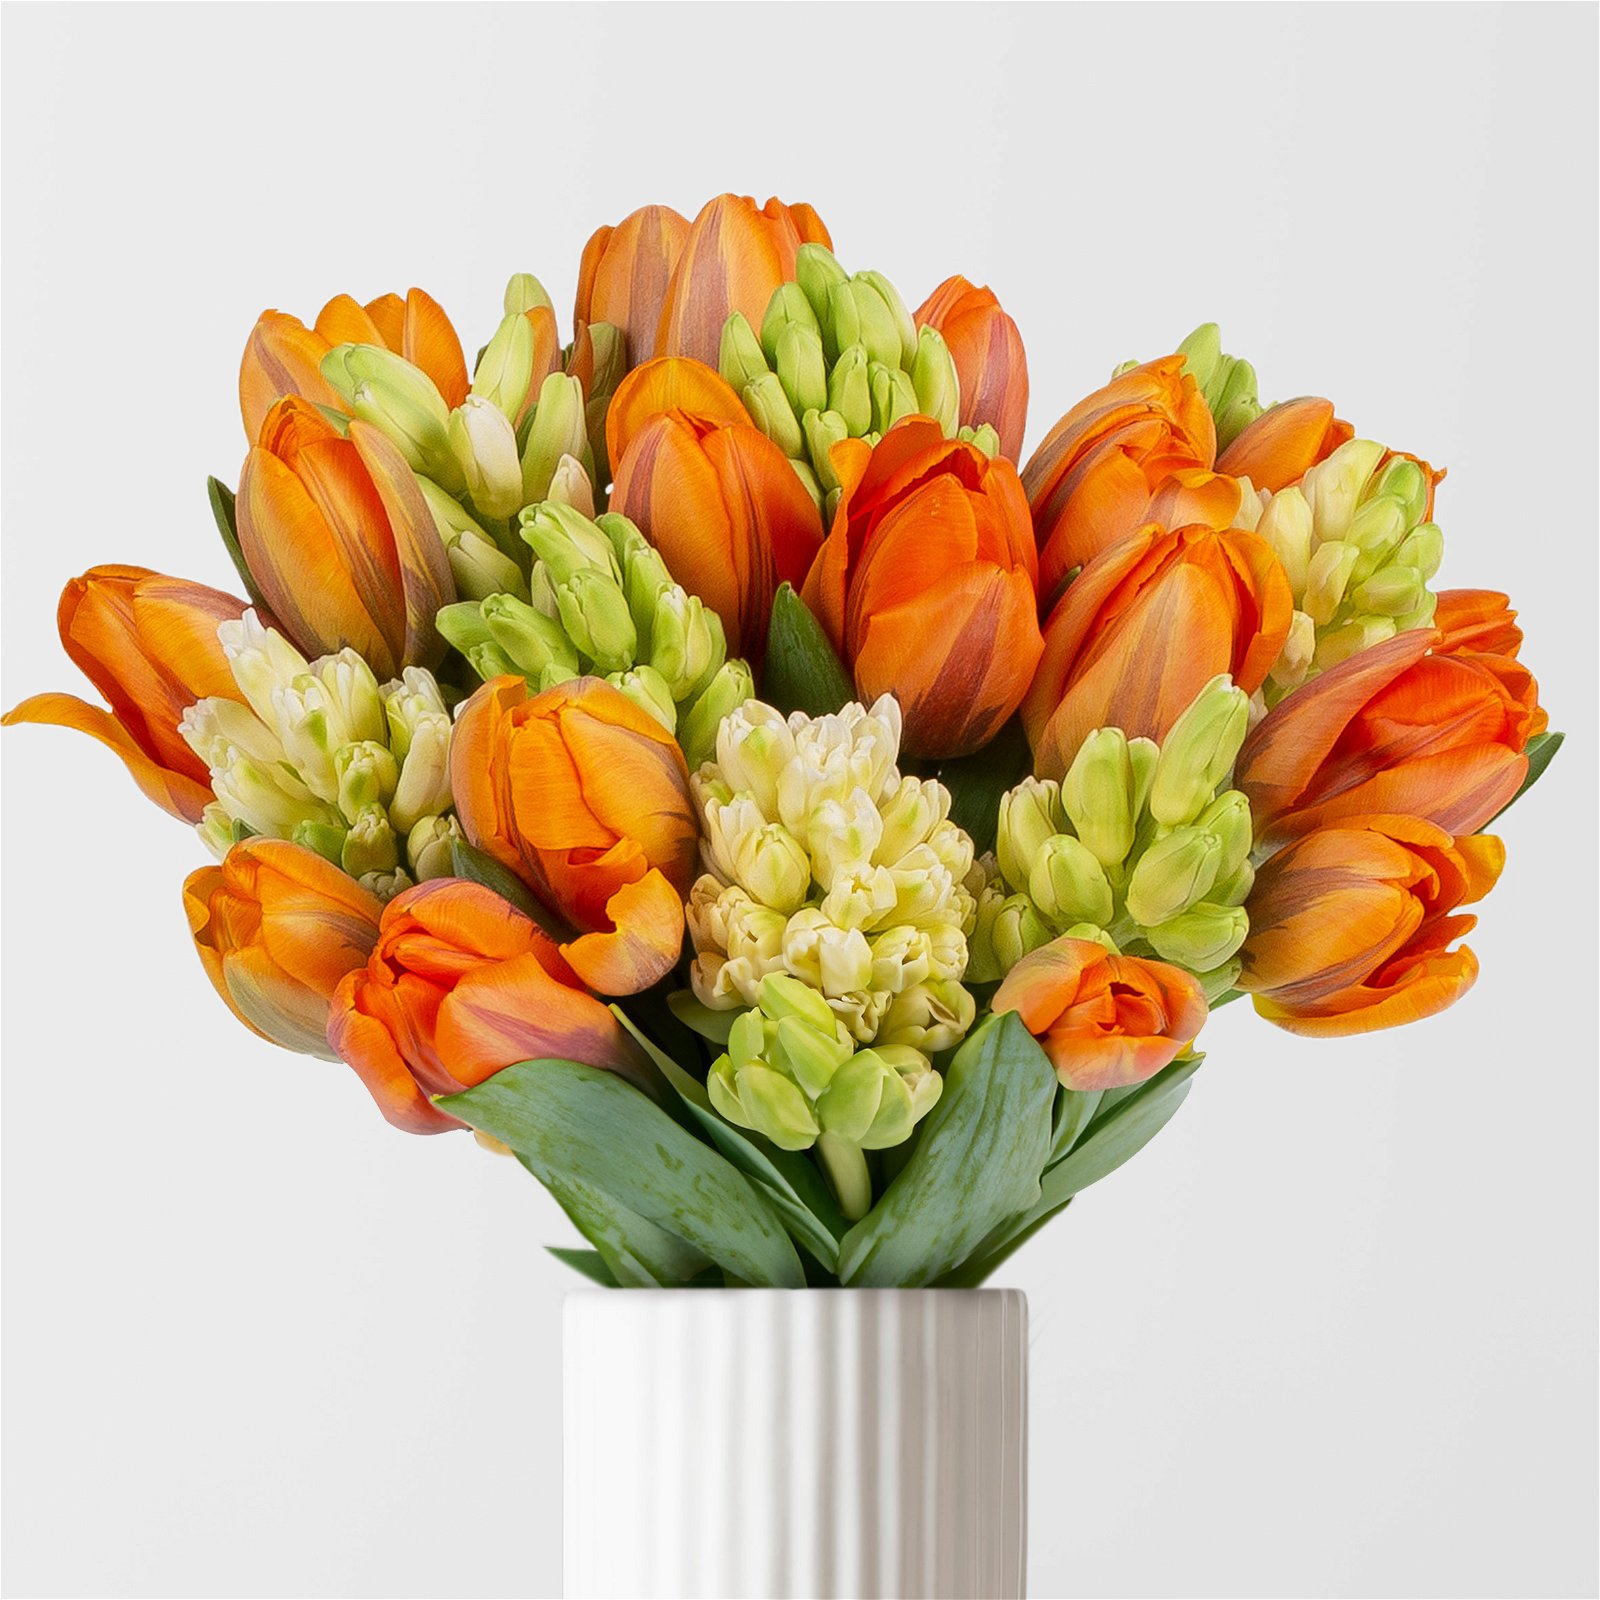 Gemischter Blumenbund 'Frühlingszeit', orange-weiß, inkl. gratis Grußkarte